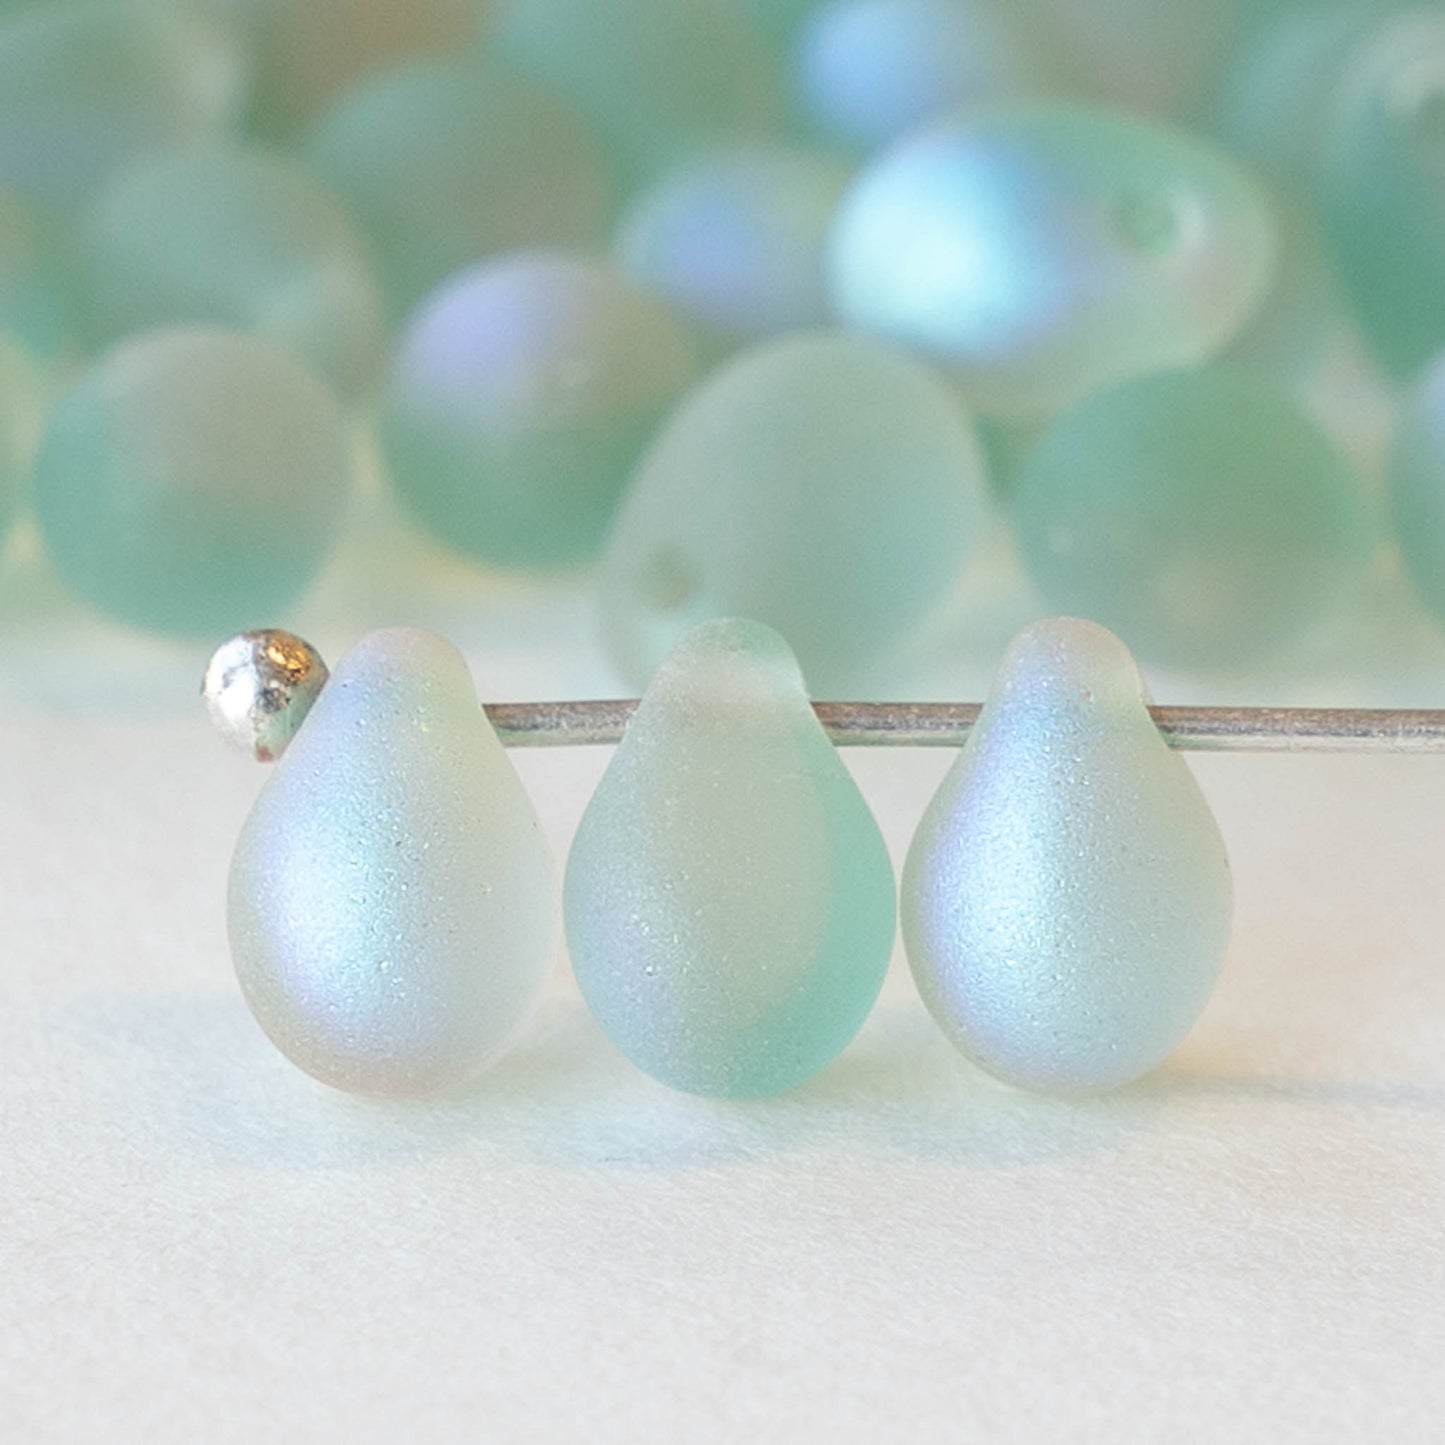 5x7mm Glass Teardrop Beads - Light Celadon Green Blue AB - 120 Beads